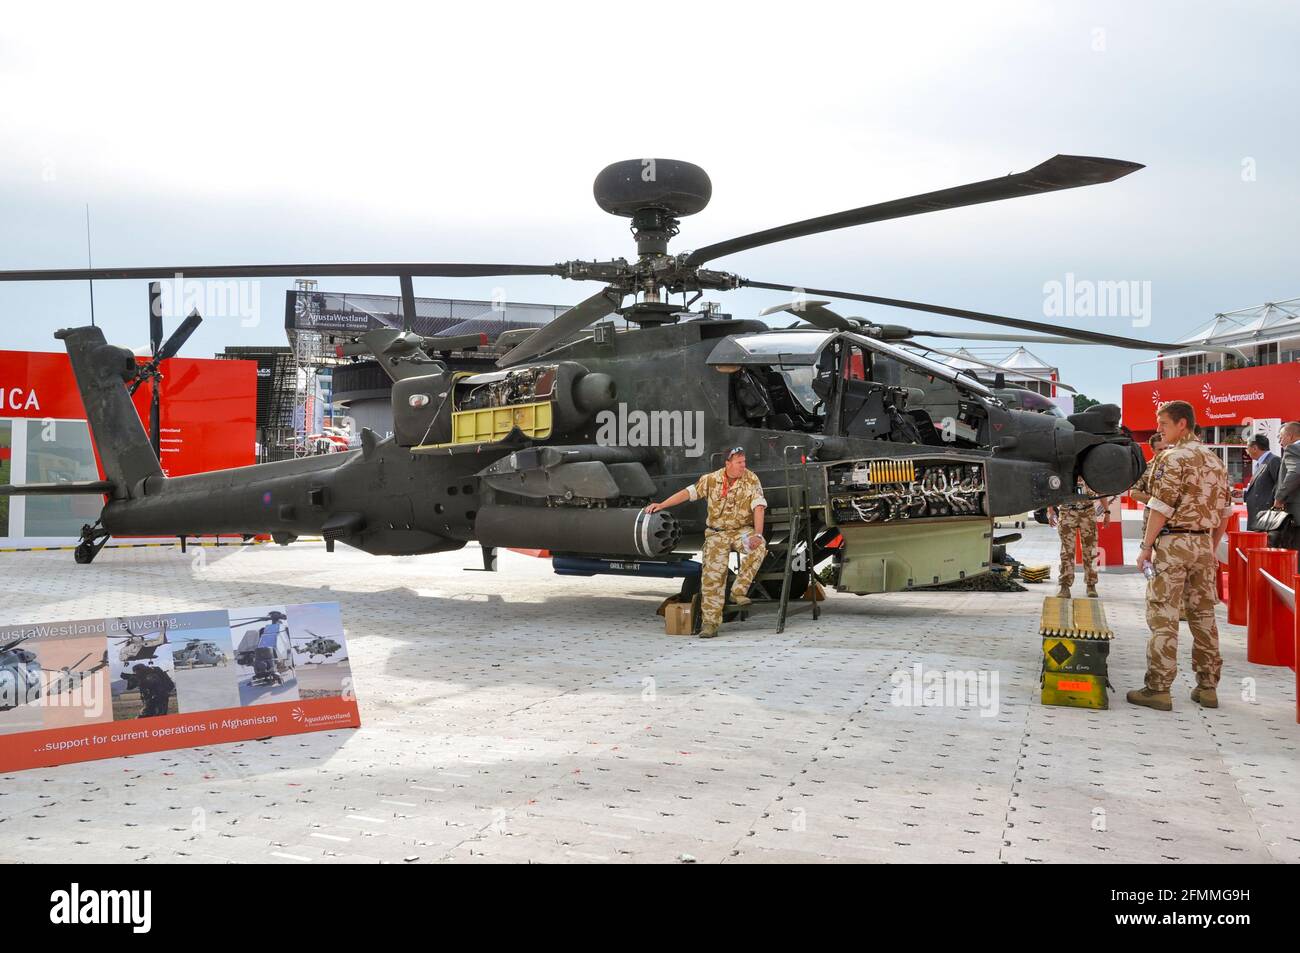 Ejército Británico AgustaWestland WAH-64 Gunship Apache en exhibición en el Aeropuerto Internacional de Farnborough. Armas. Industria de defensa. Personal militar, tripulación Foto de stock